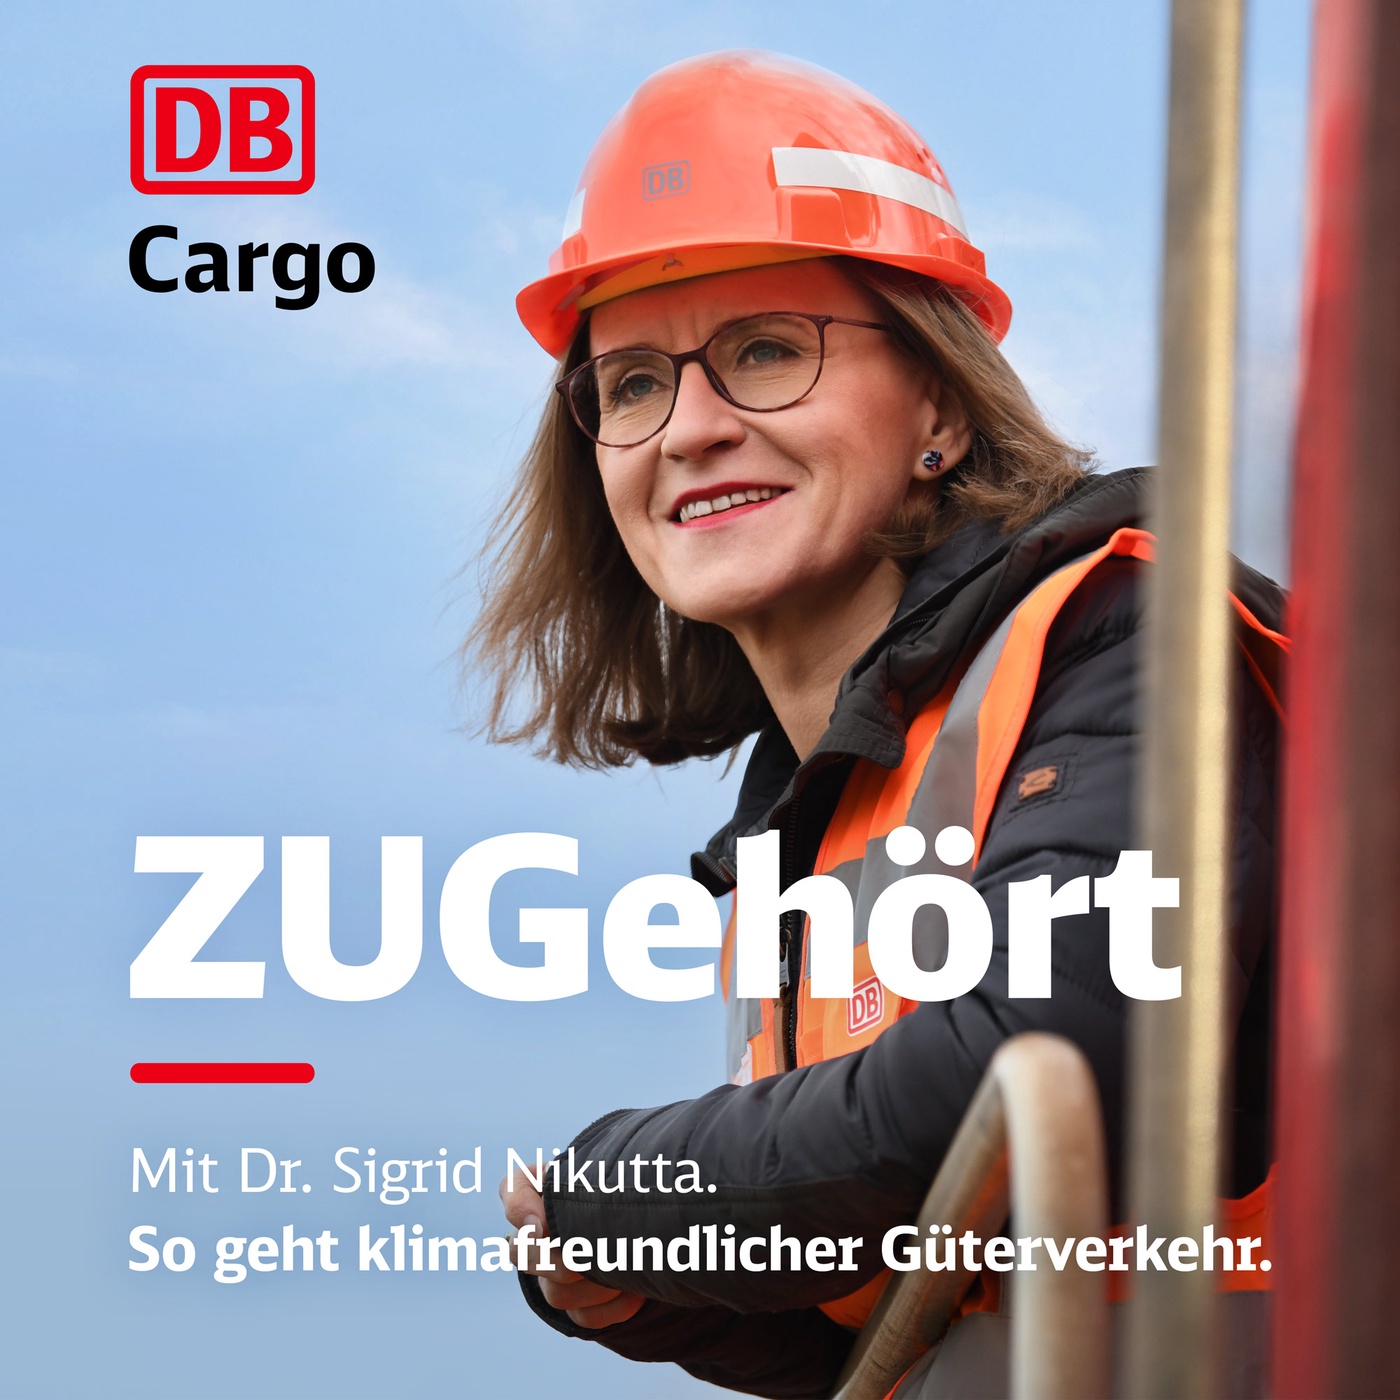 Episode 6: Patrick Ehnert – Weihnachtsmann der DB Cargo